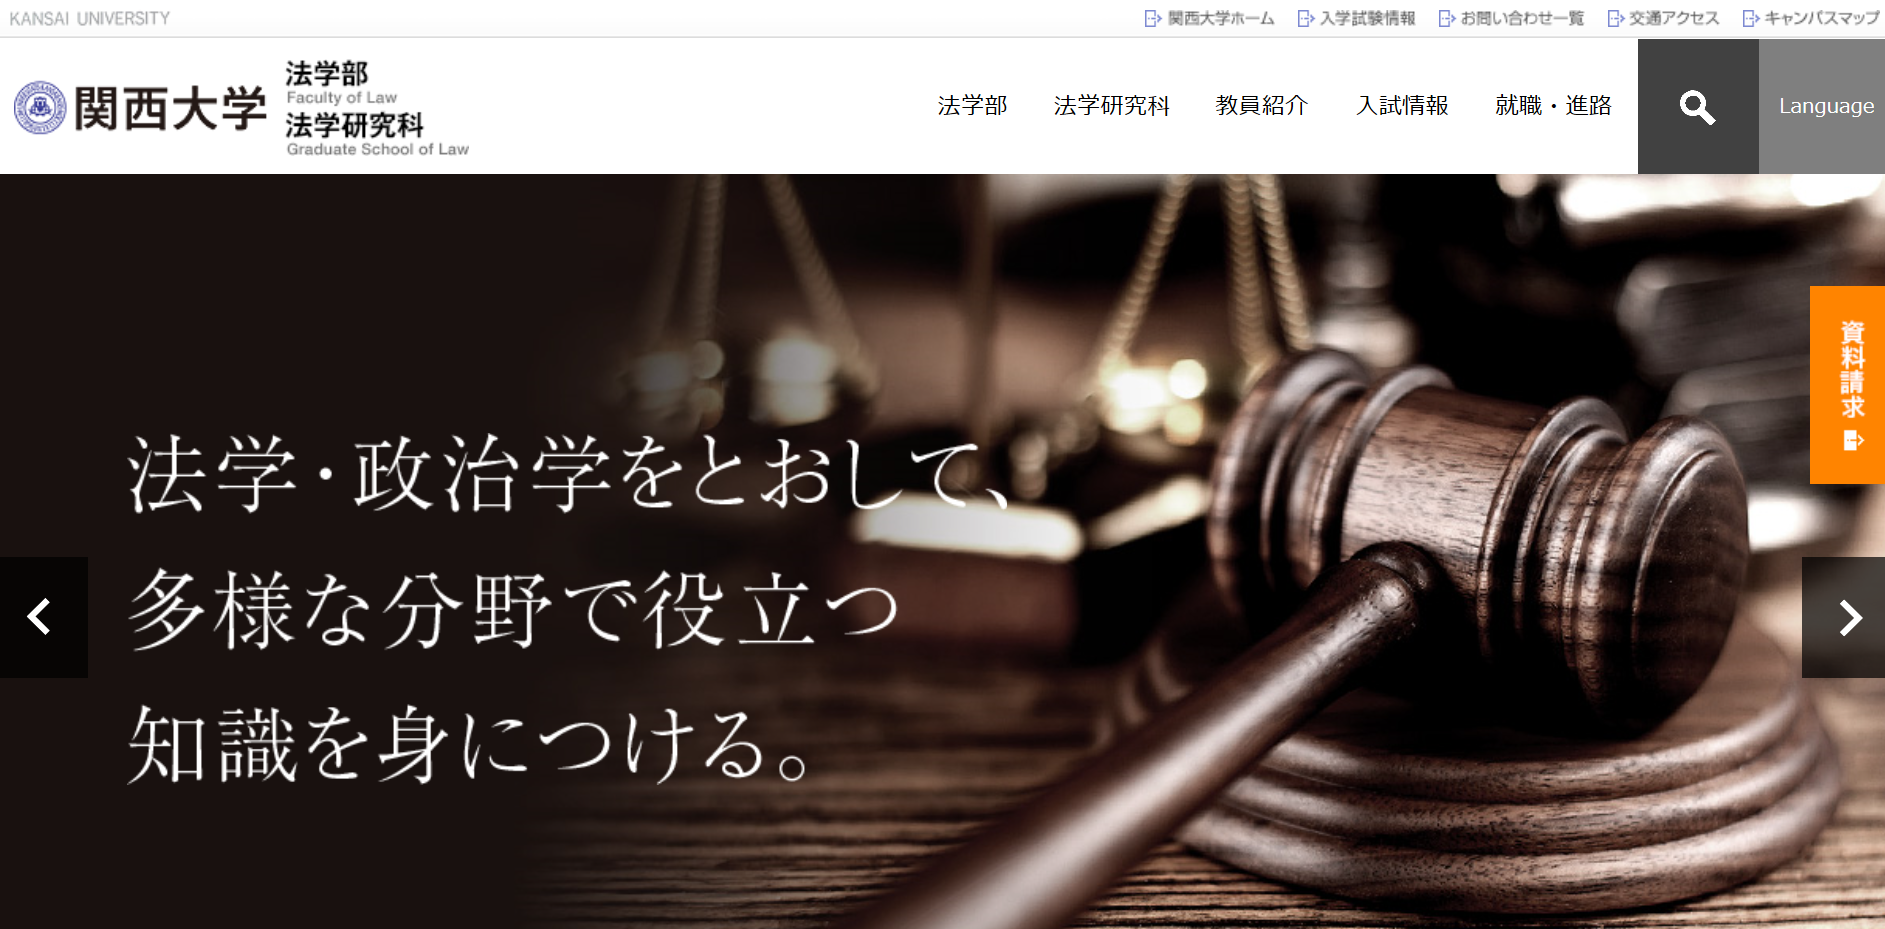 関西大学 法学部